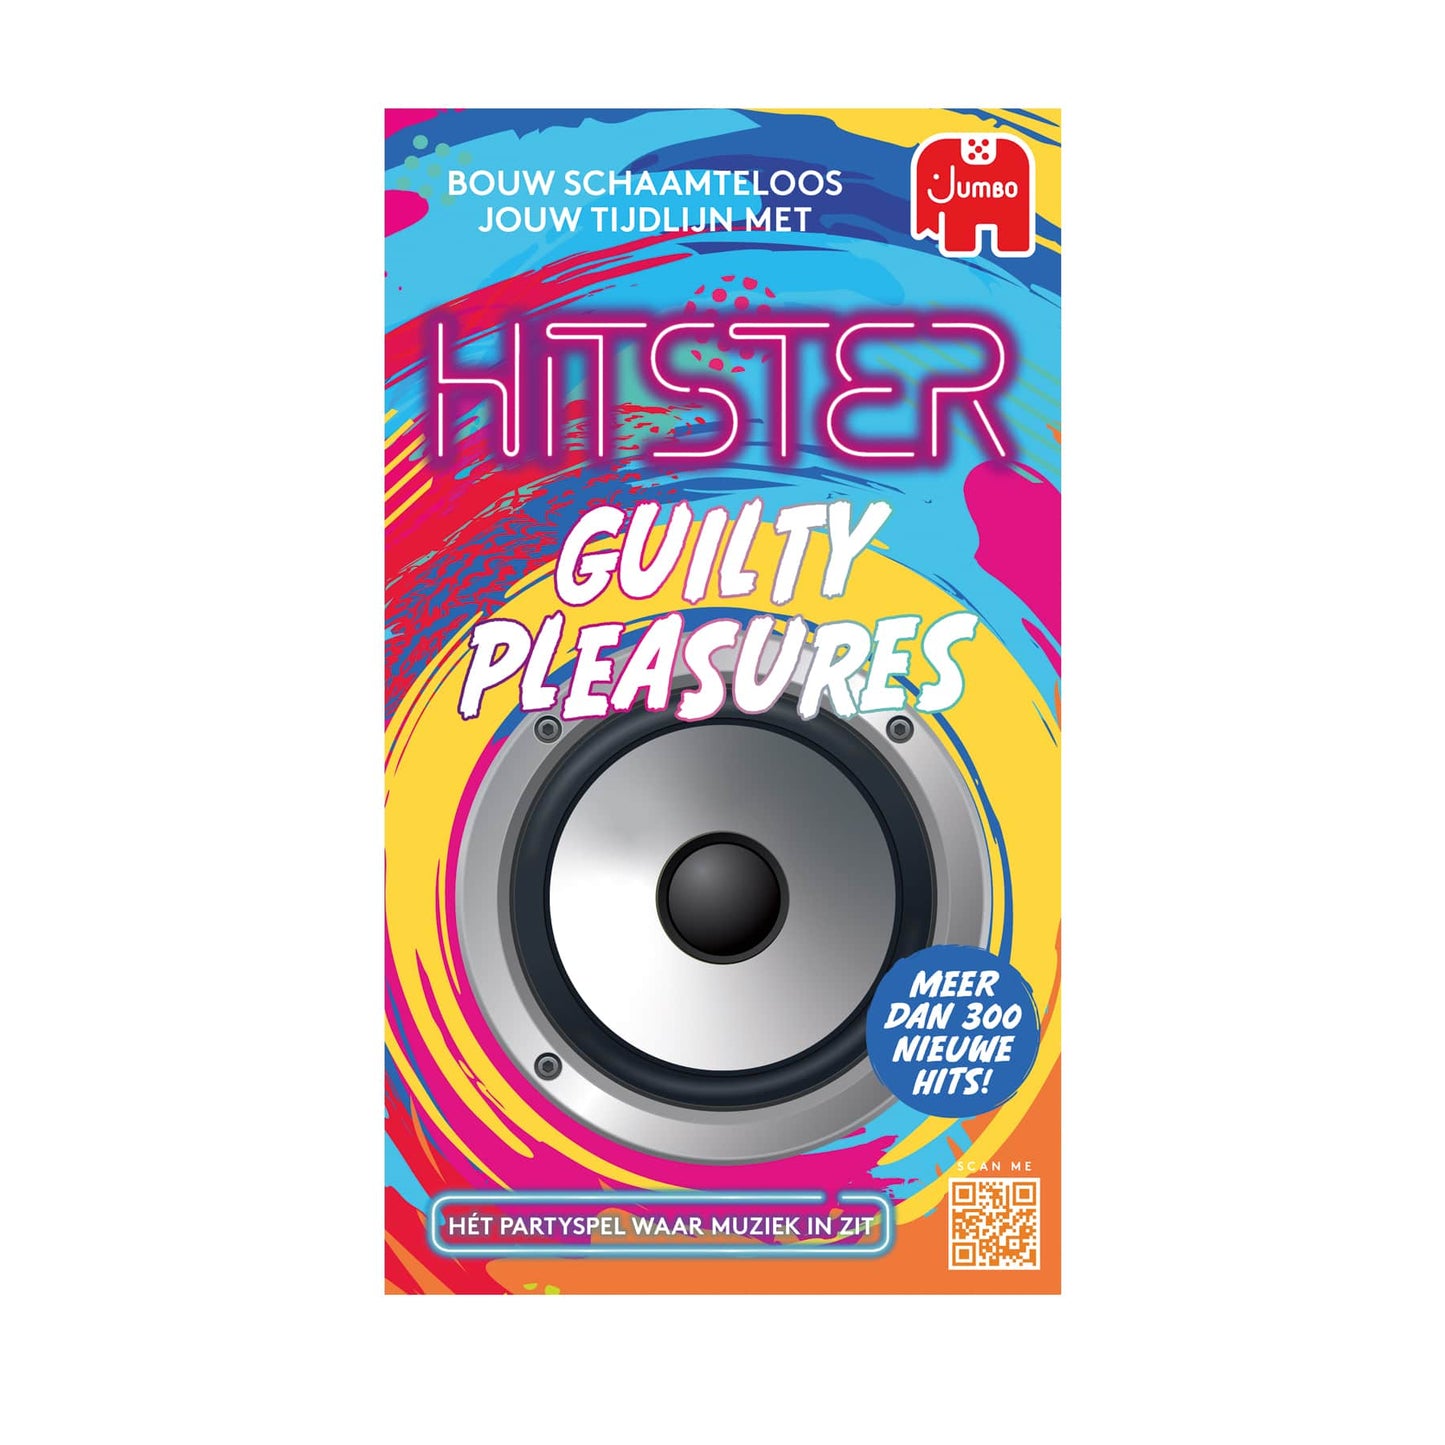 Hitster – Guilty Pleasures